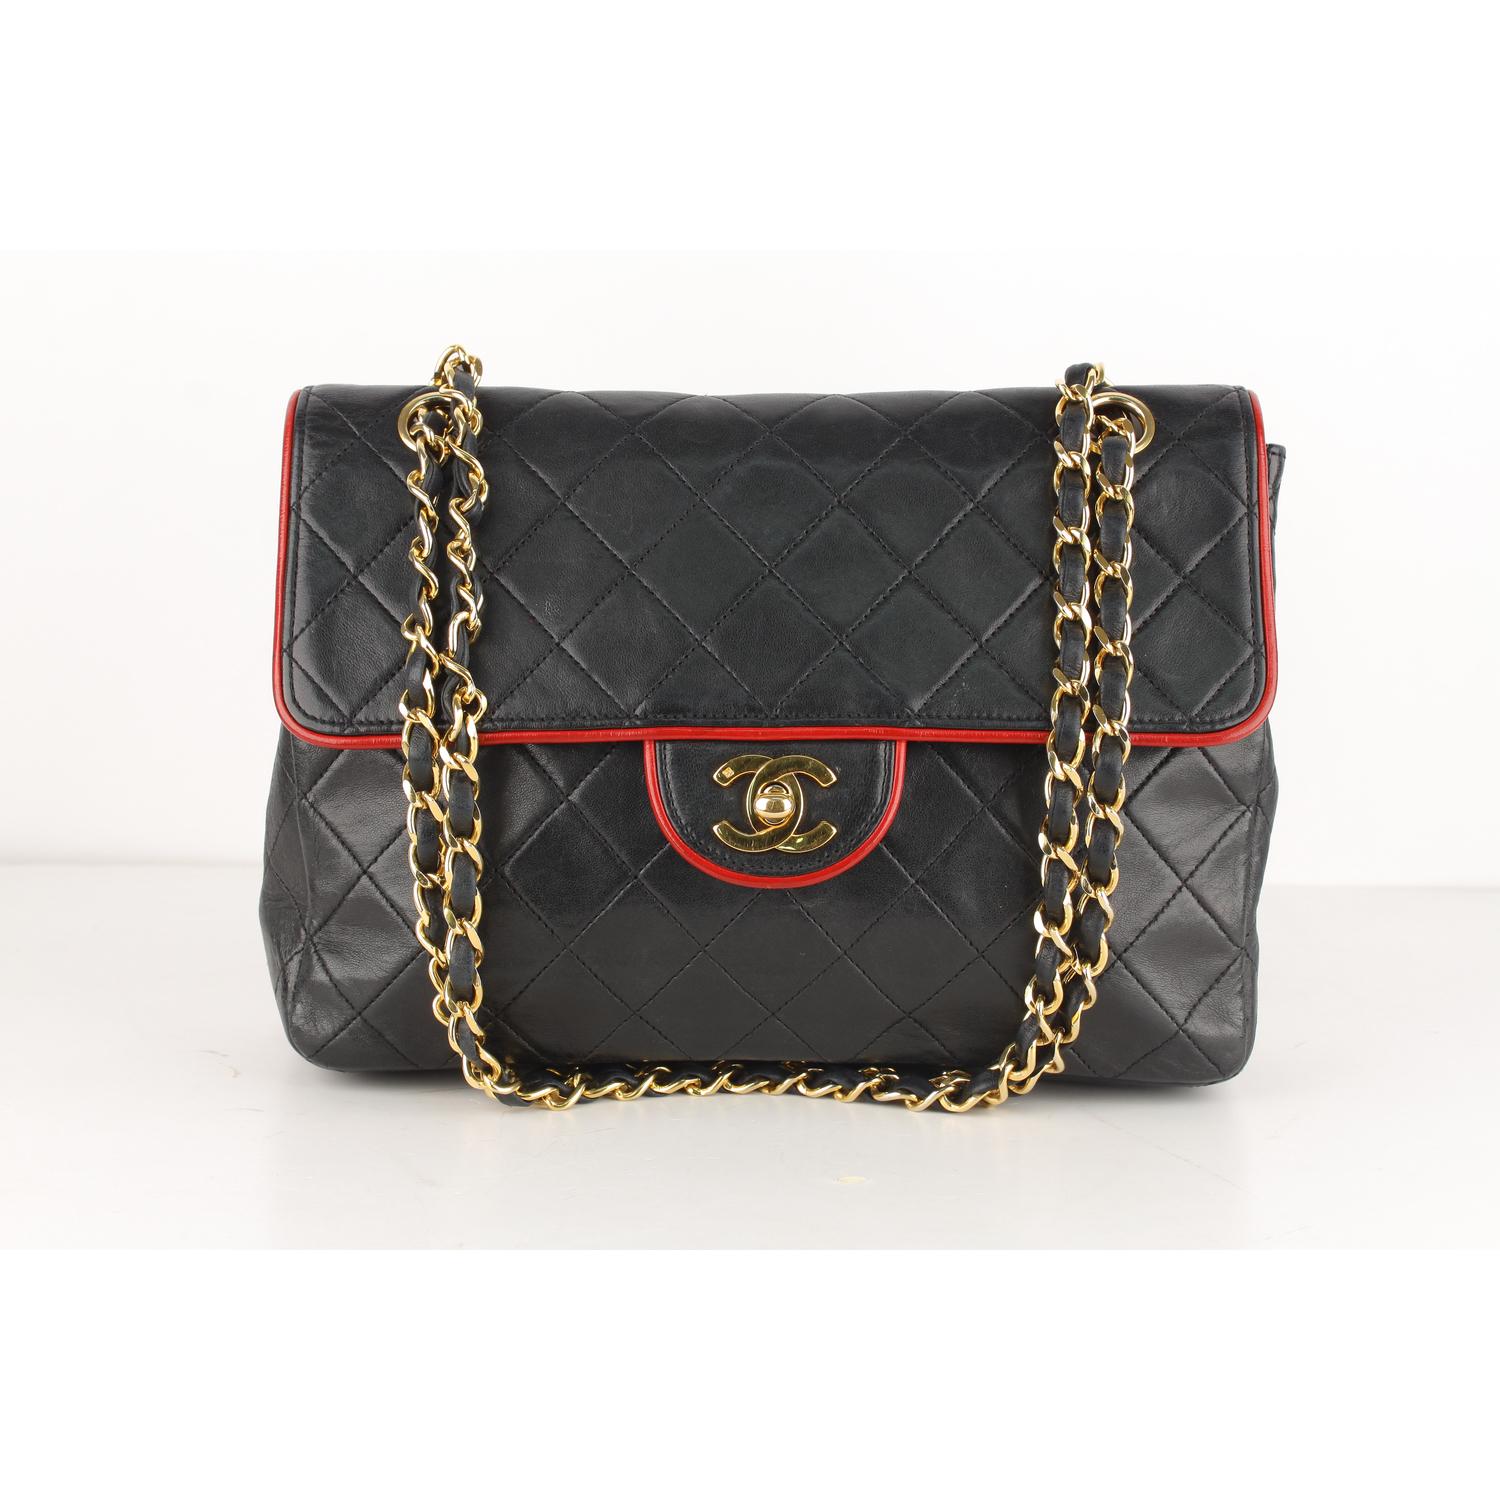 Chanel Vintage Black Quilted Leather Shoulder Bag with Contrast Trim 2